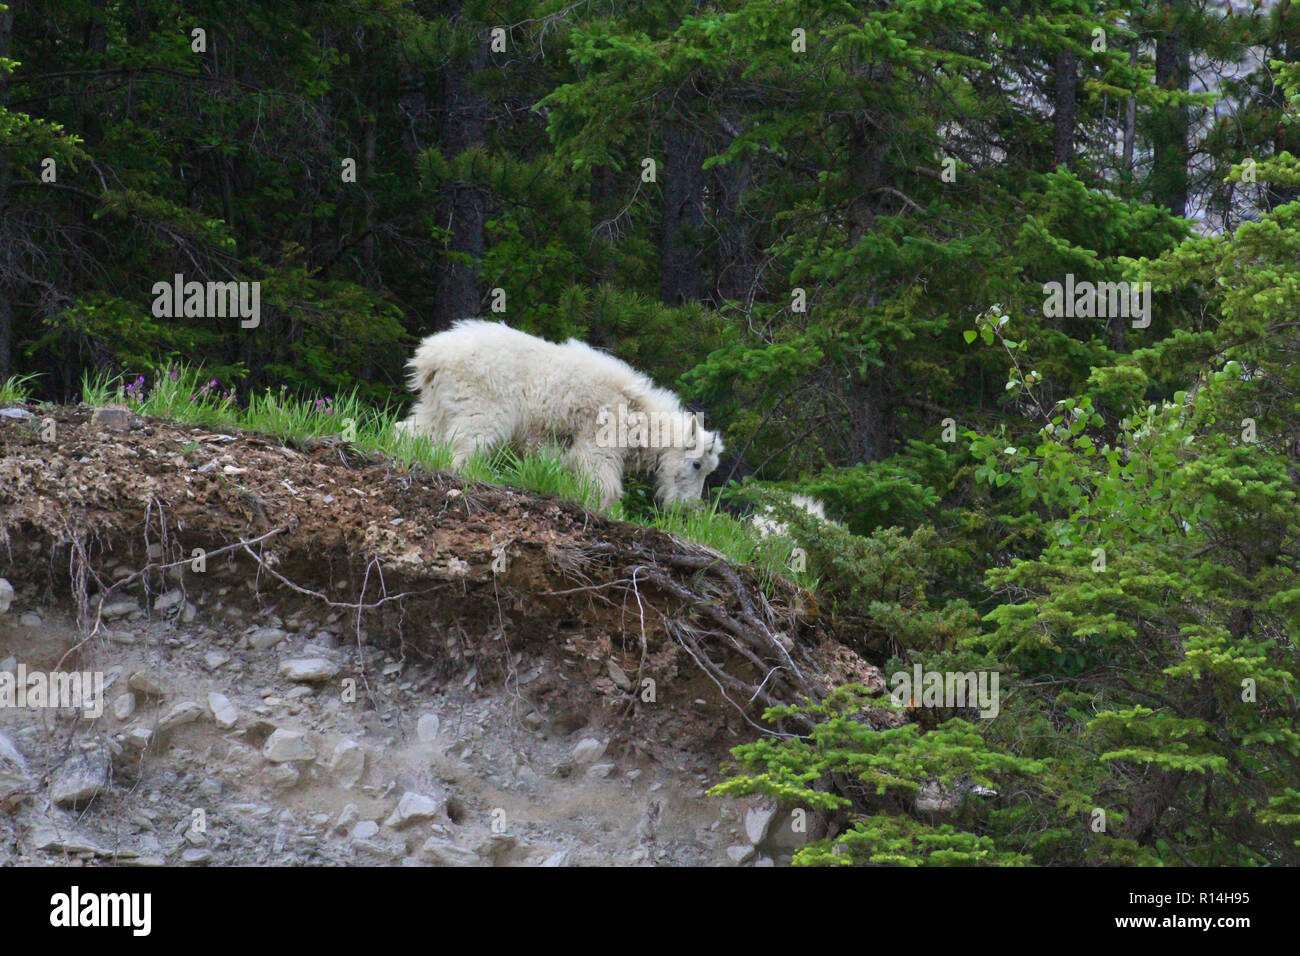 Die schneeziege (Oreamnos americanus), auch als die Rocky Mountain Goat genannt, ist eine große Huftiere Säugetier endemisch in Nordamerika. Stockfoto